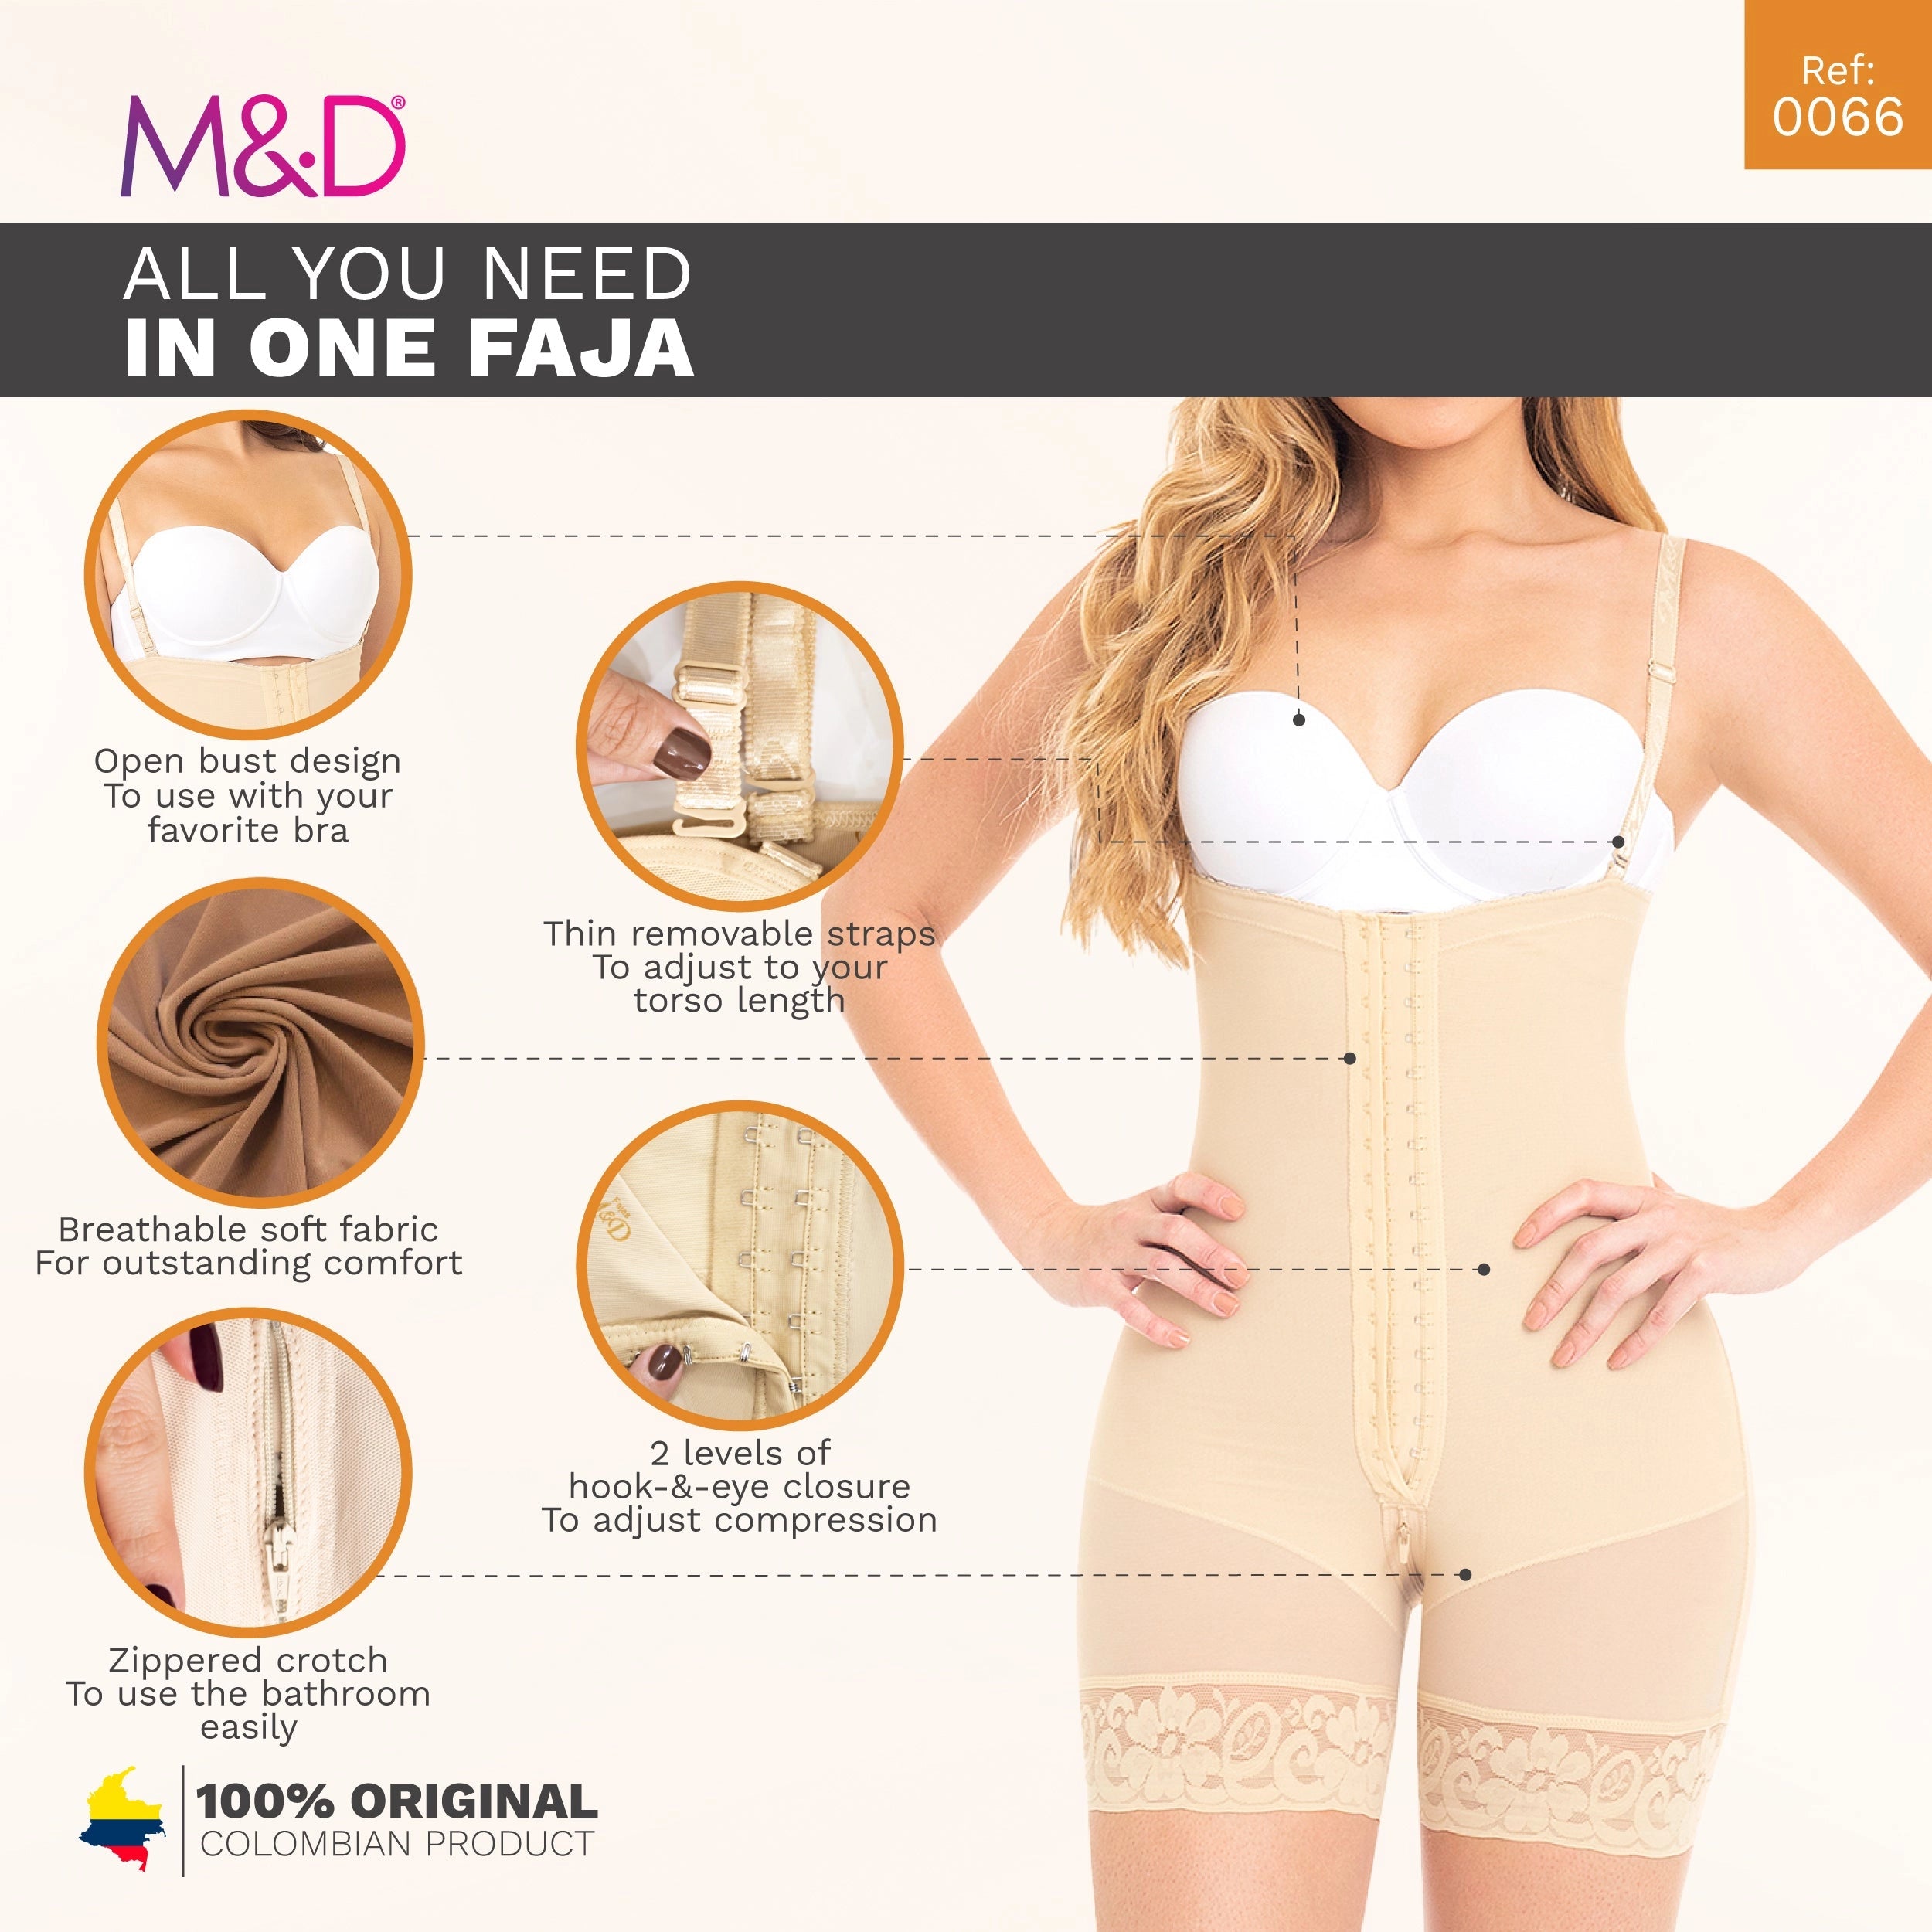 Fajas M&D Colombian Body-Shaper Distributor - Videos